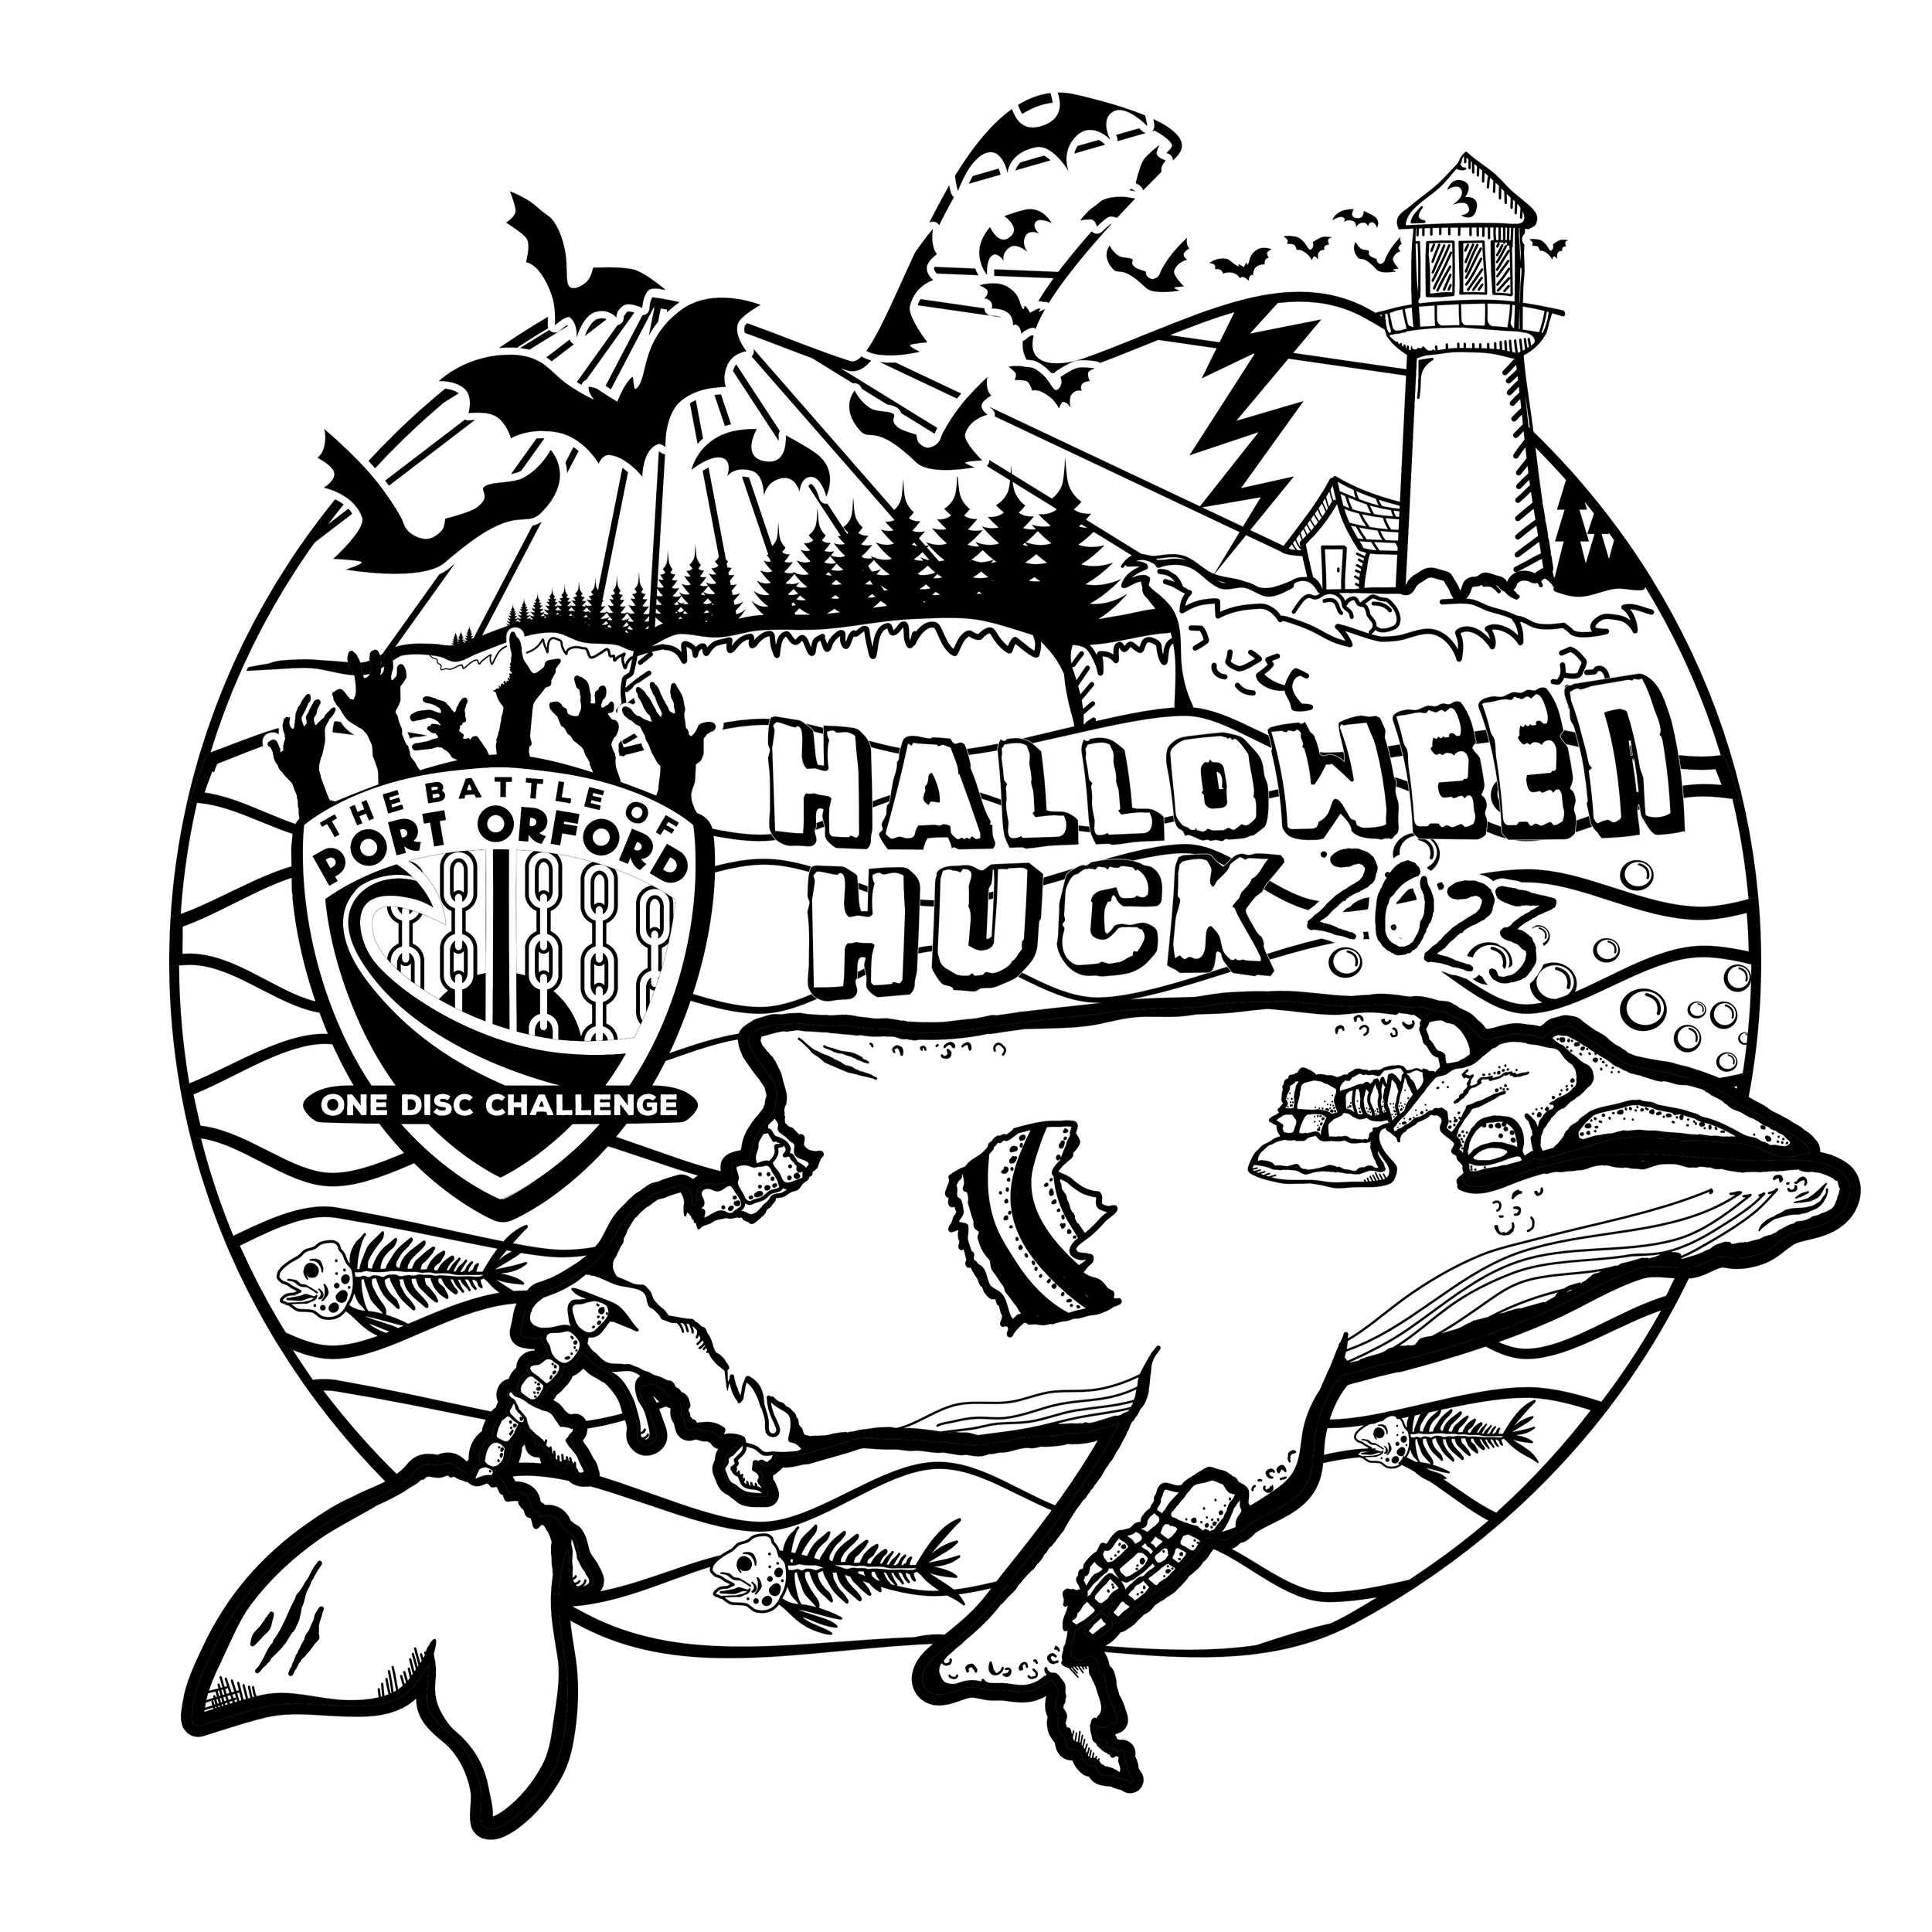 Halloween Huck Disc Stamp.jpg